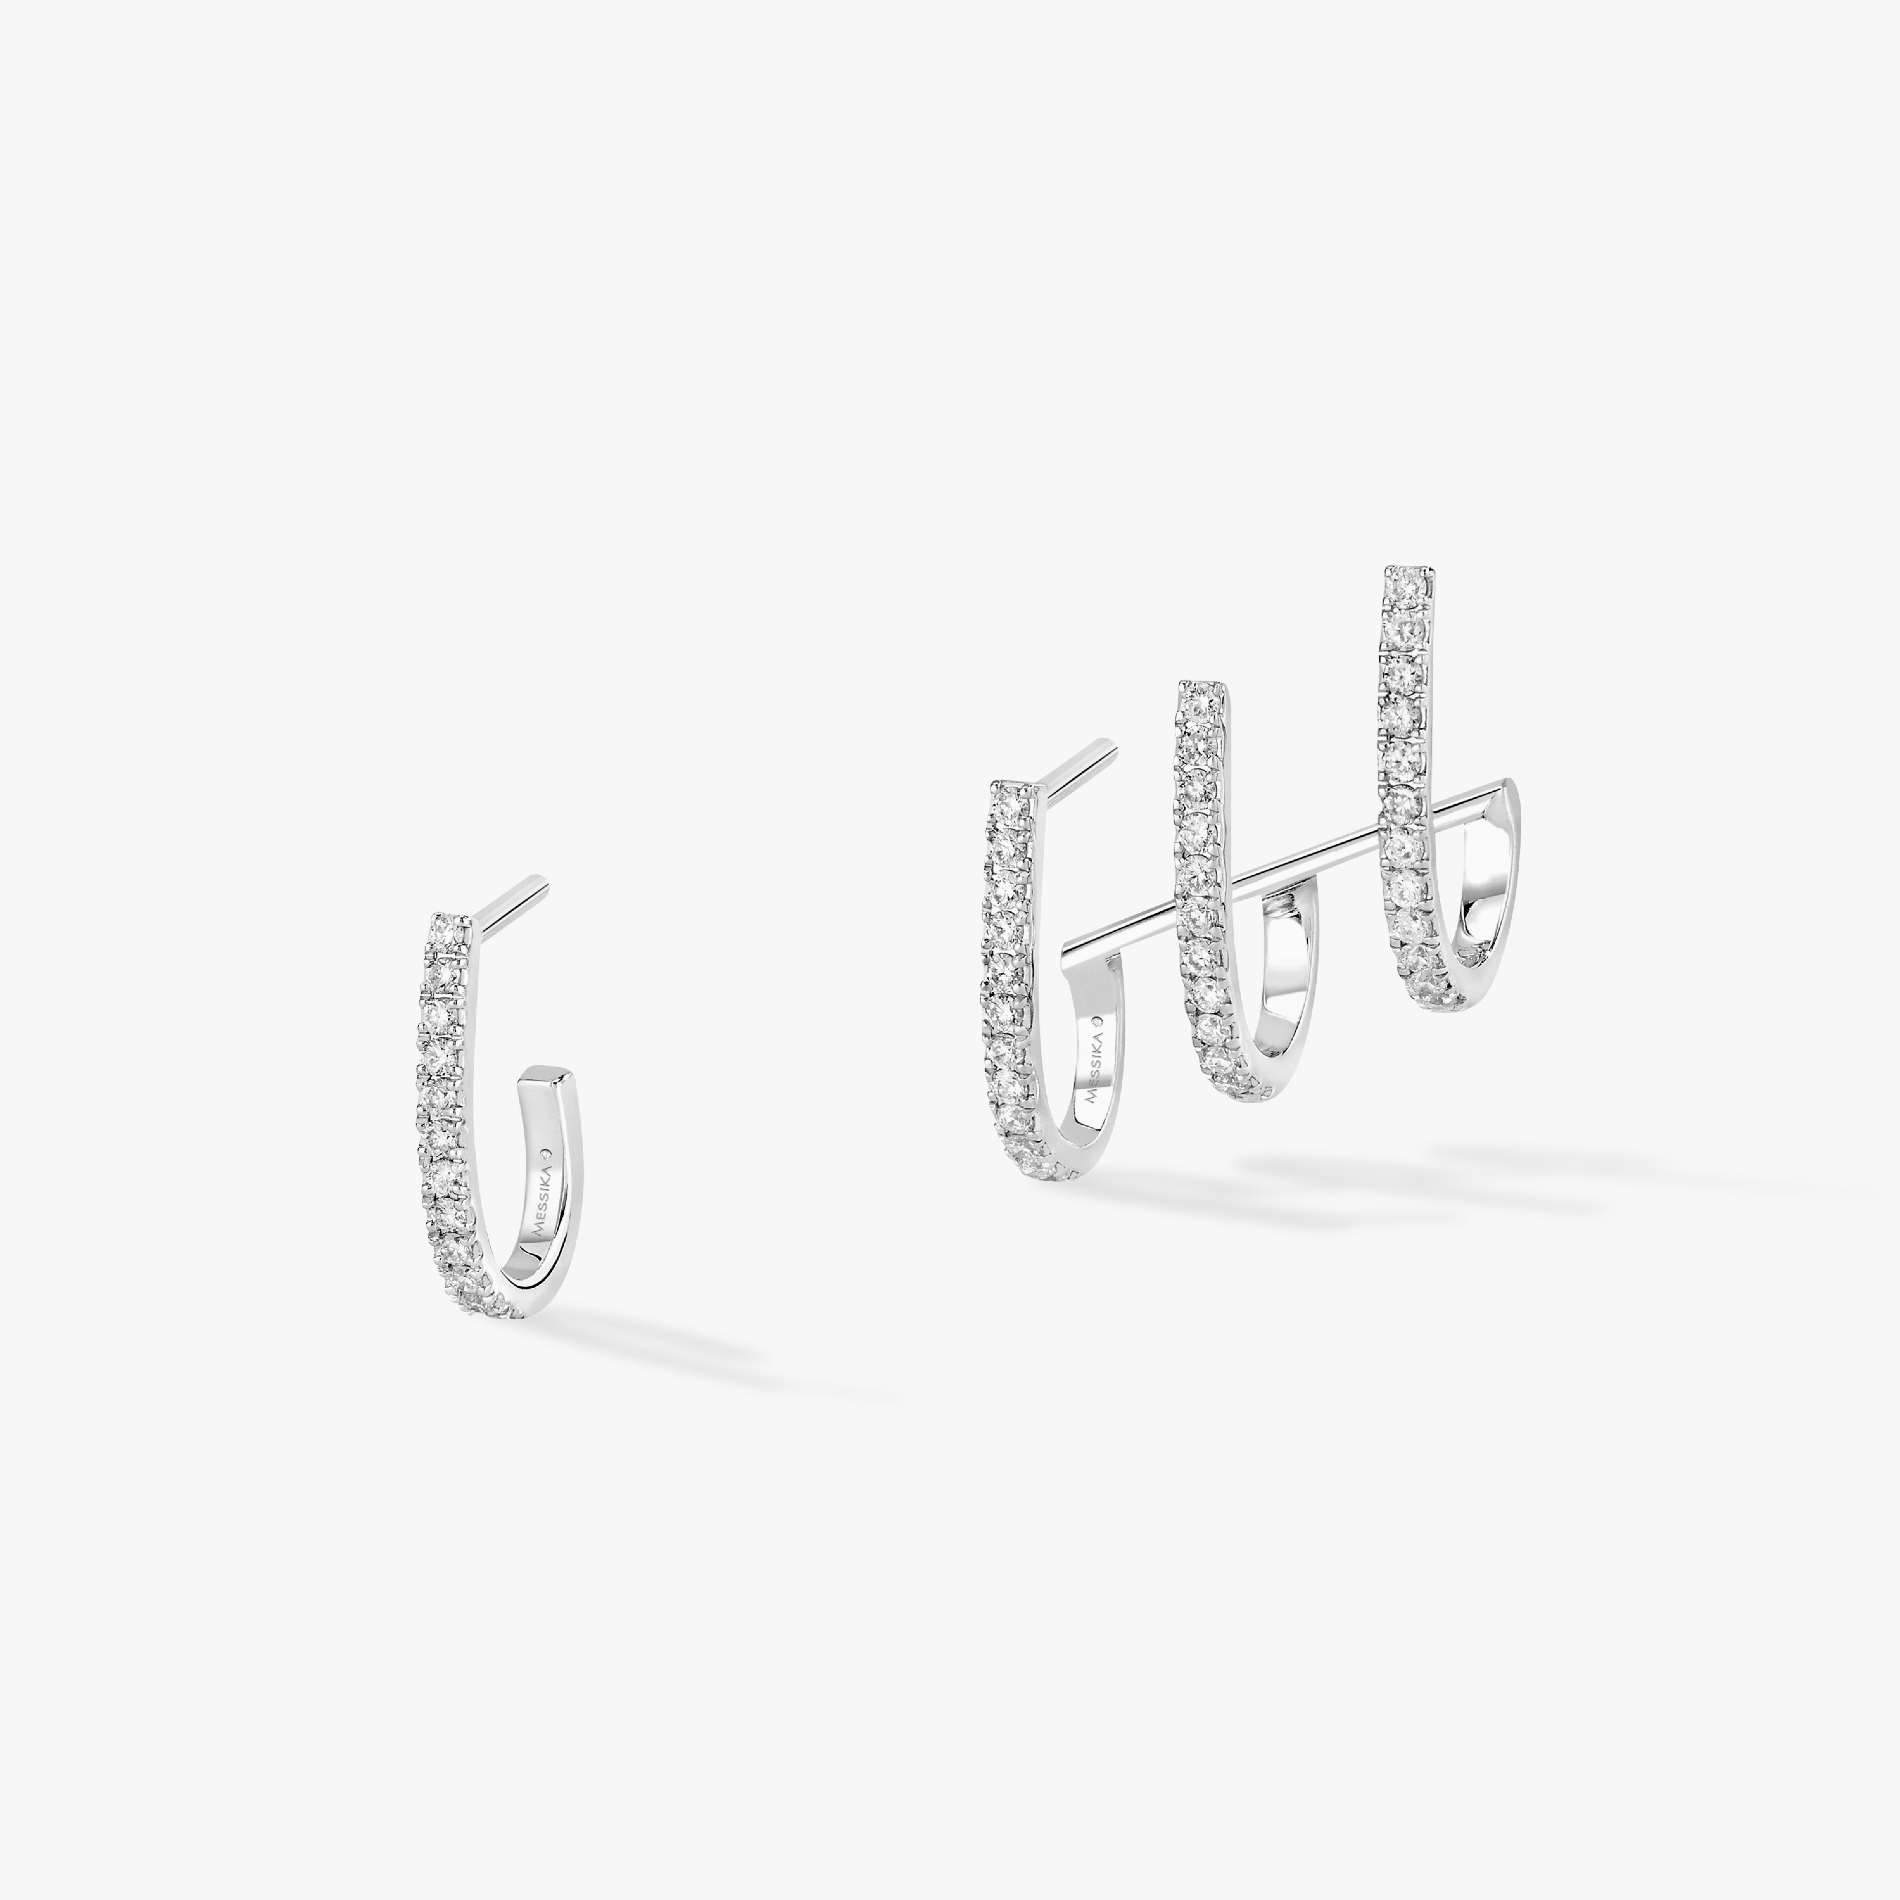 Boucles d'oreilles Femme Or Blanc Diamant Multi-Créoles Gatsby 06503-WG